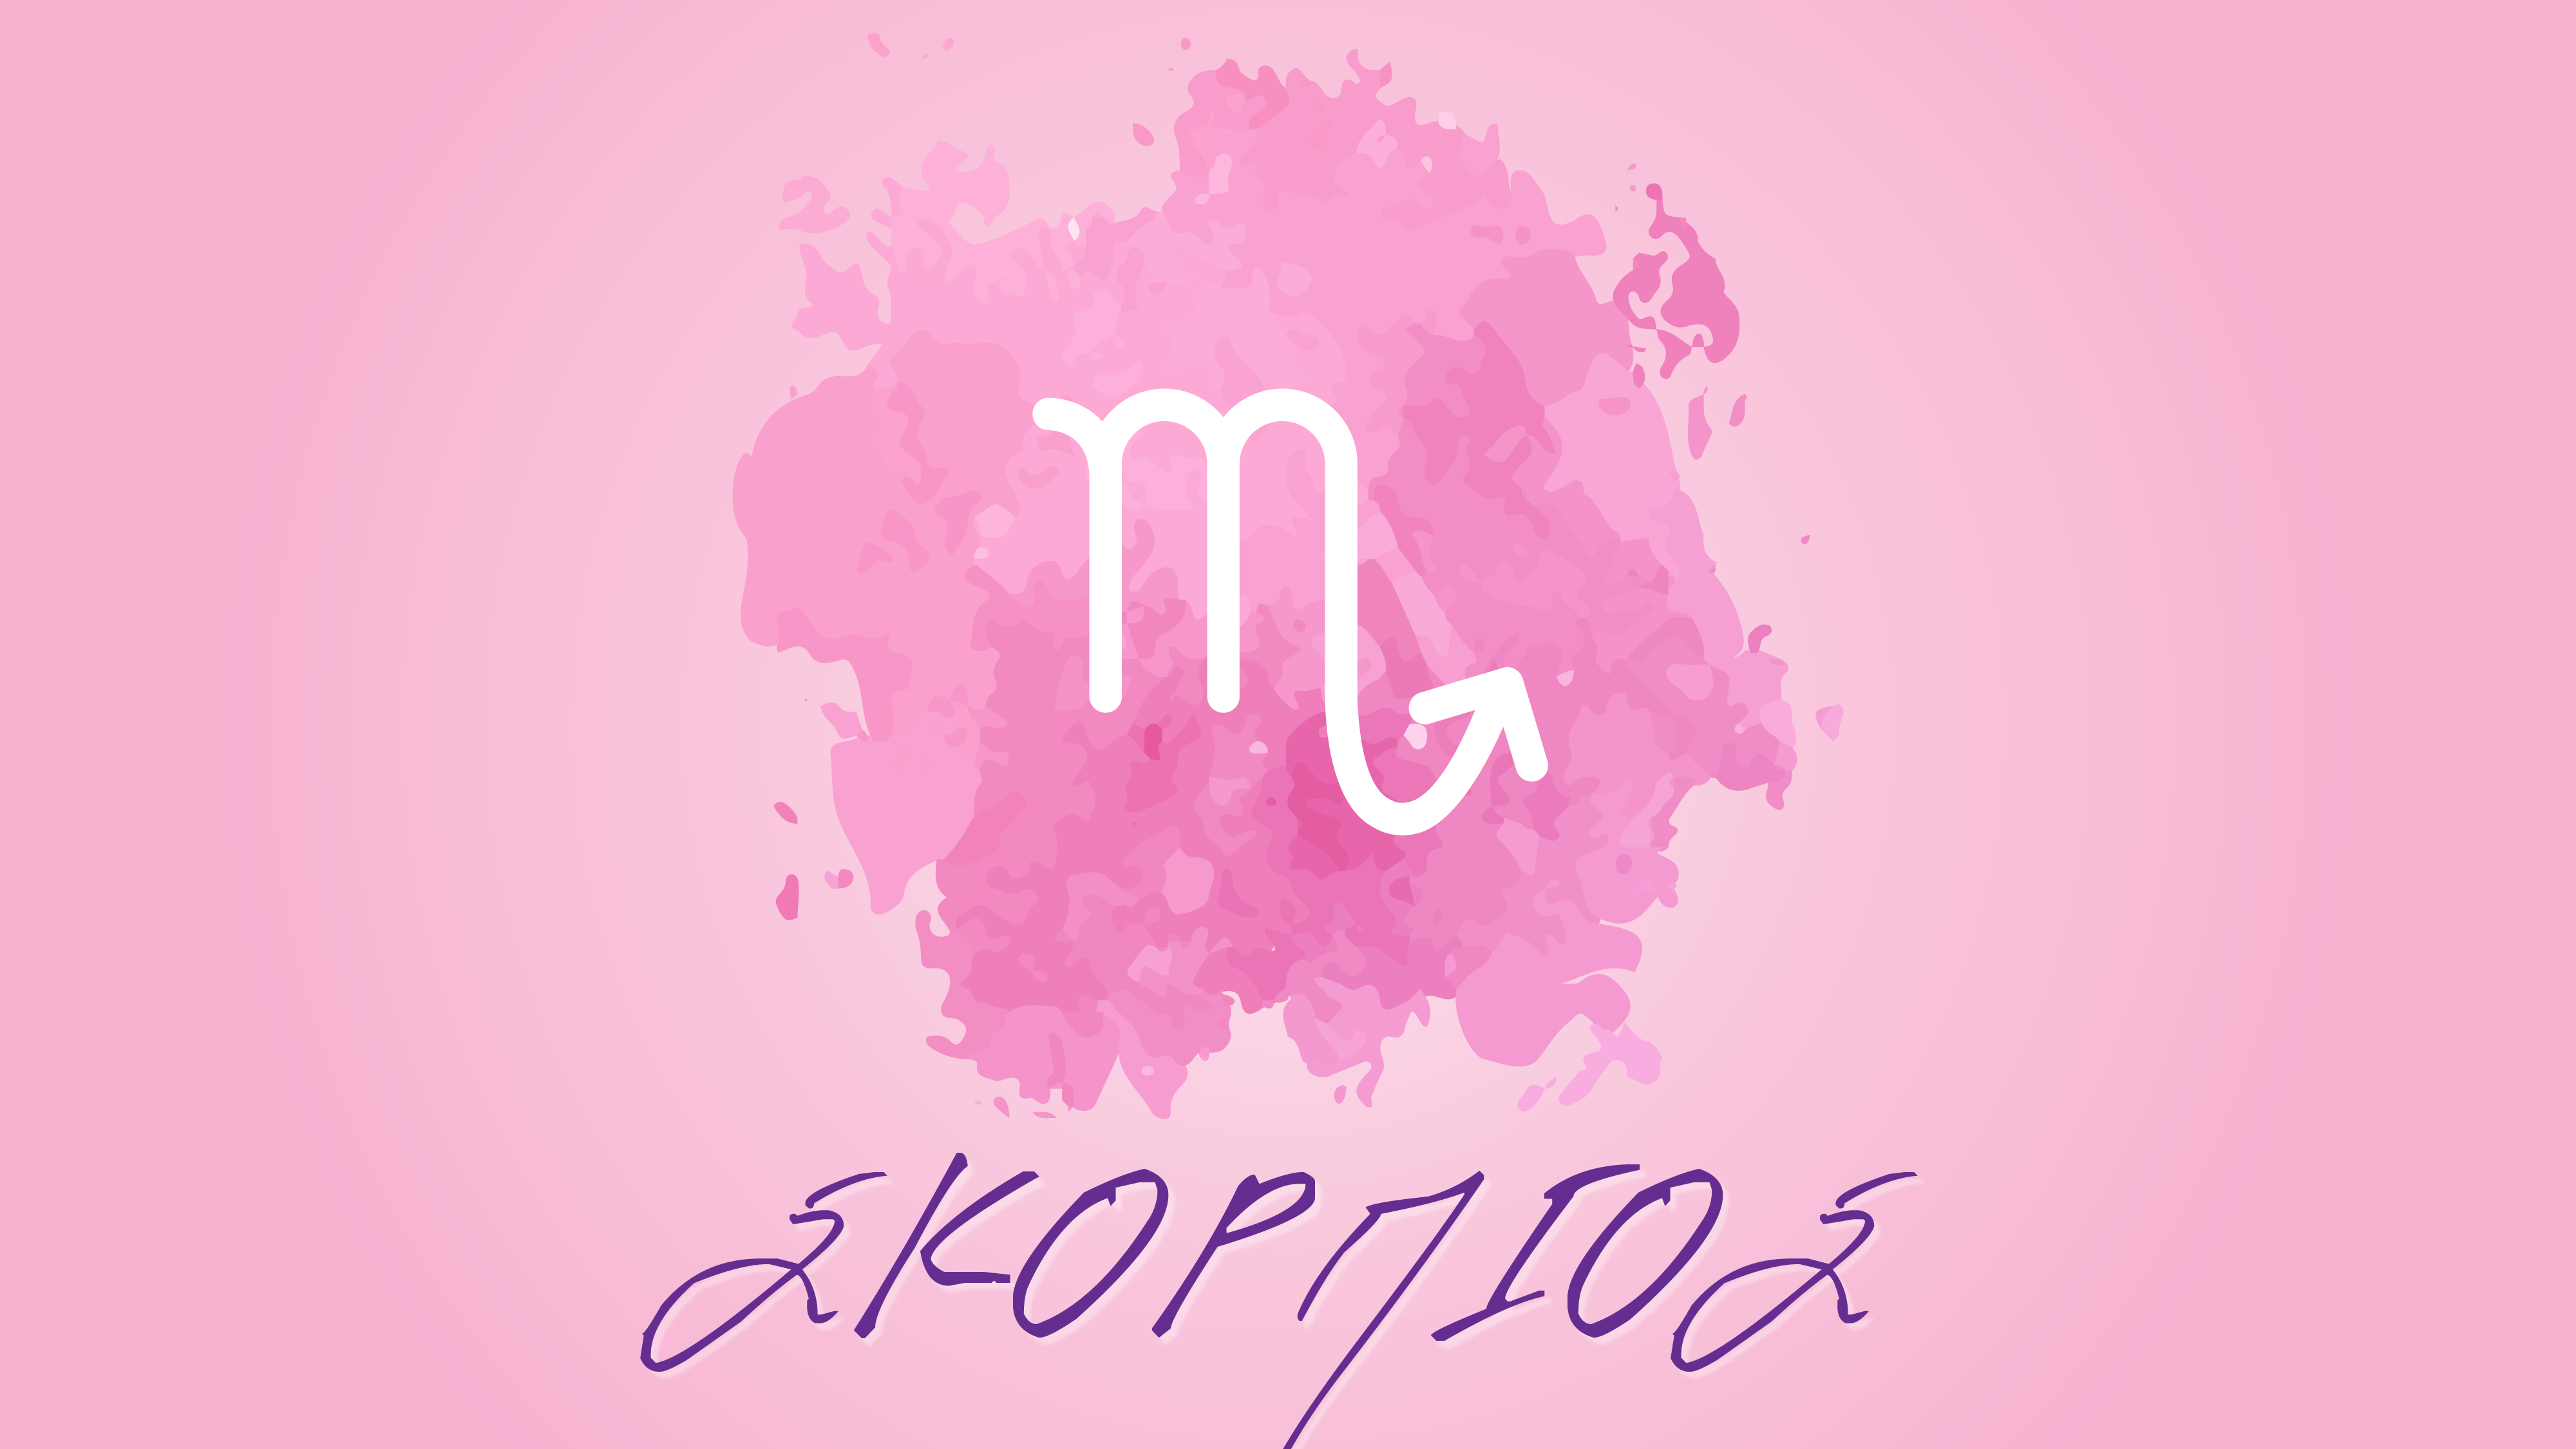 Σκορπιός – Μηνιαίες αστρολογικές προβλέψεις Σεπτεμβρίου 2020